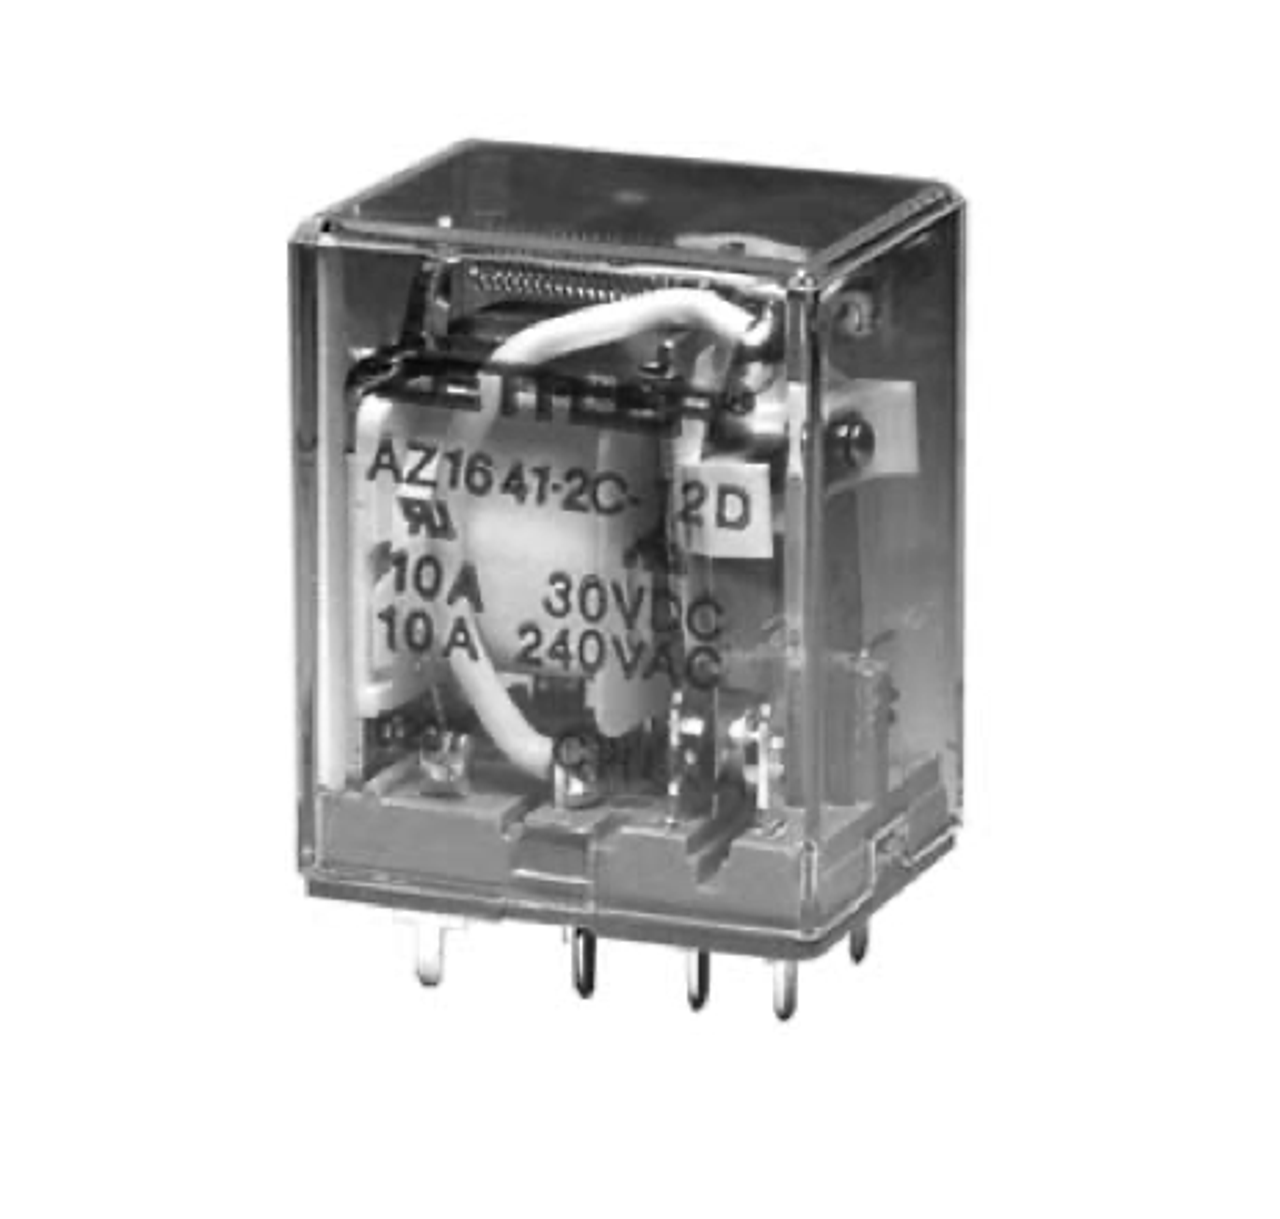 American Zettler AZ1641-4C-48A Power Relay